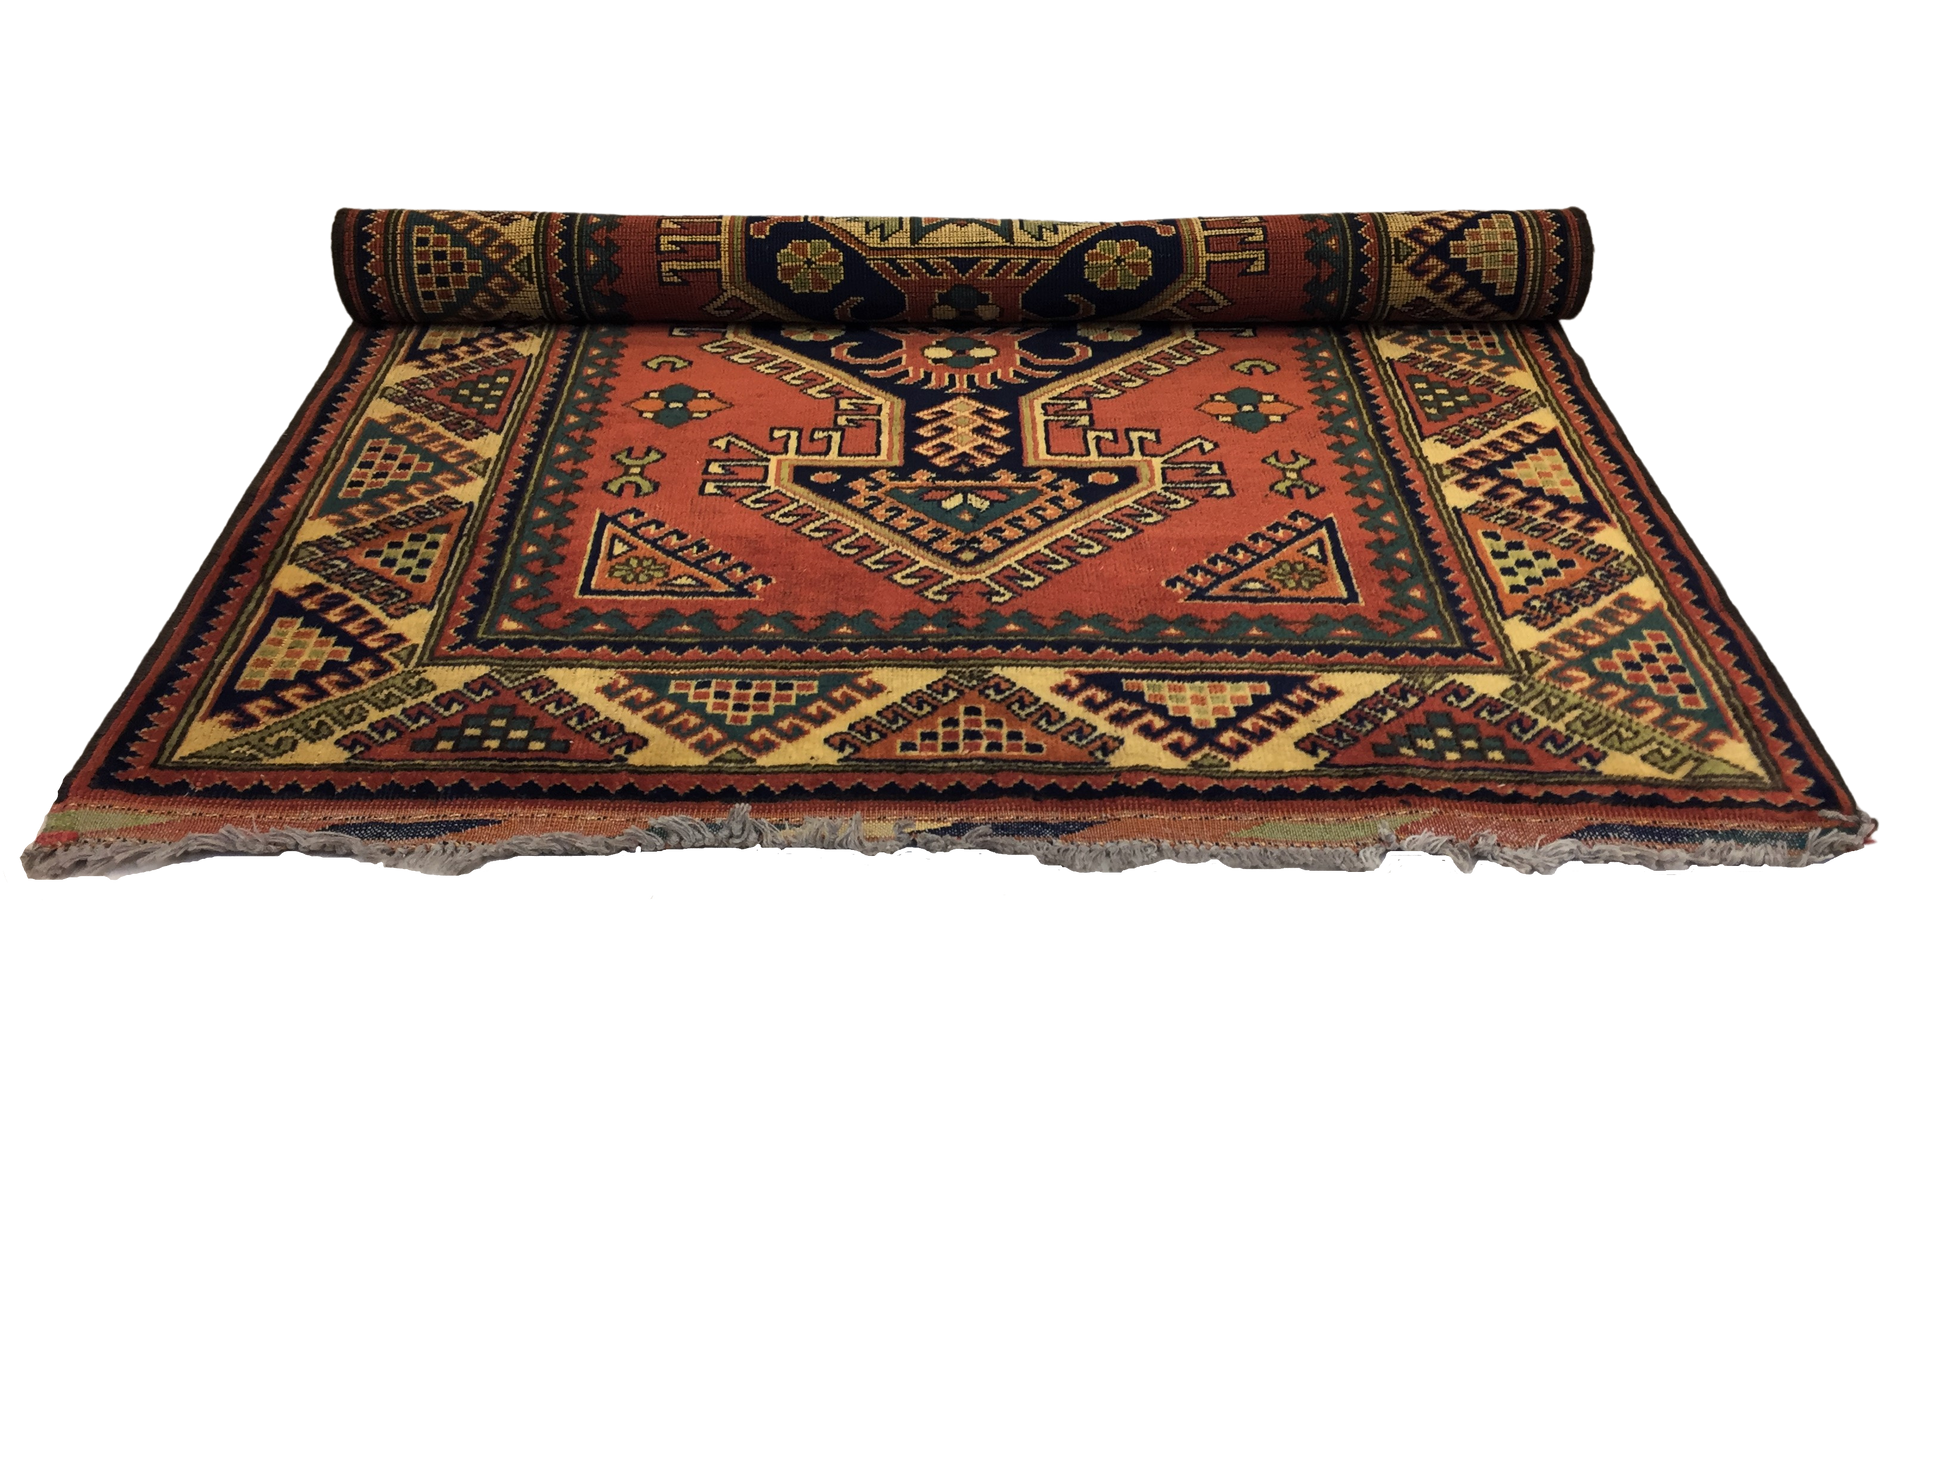 Classic Carpet 102 X 150 cm - Alfombras de Estambul -  Turkish Carpets - Alfombras de Estambul